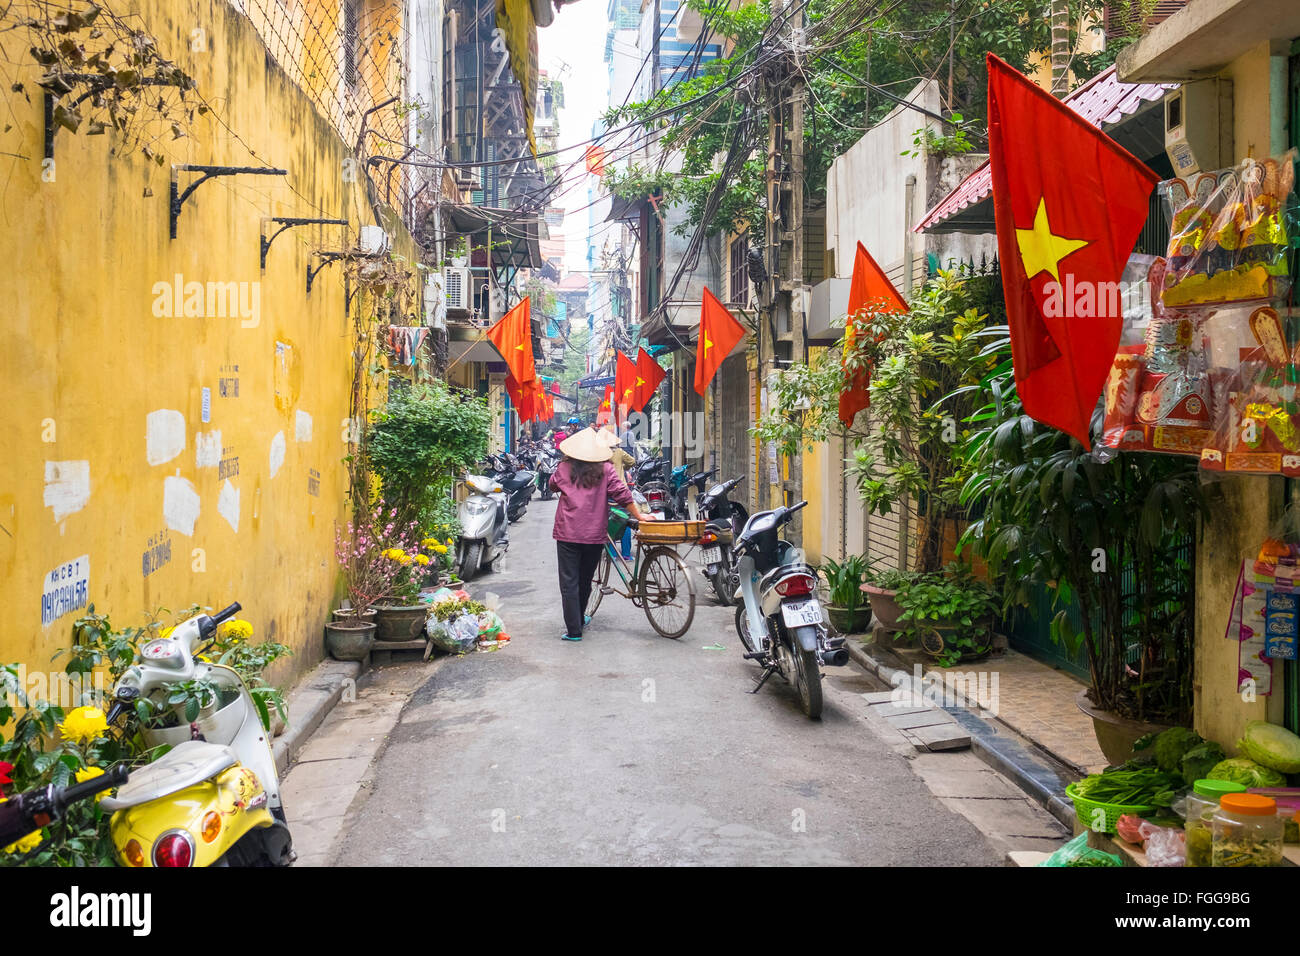 Vietnamesin drängen Fahrrad durch Gasse, Hanoi Stockfoto